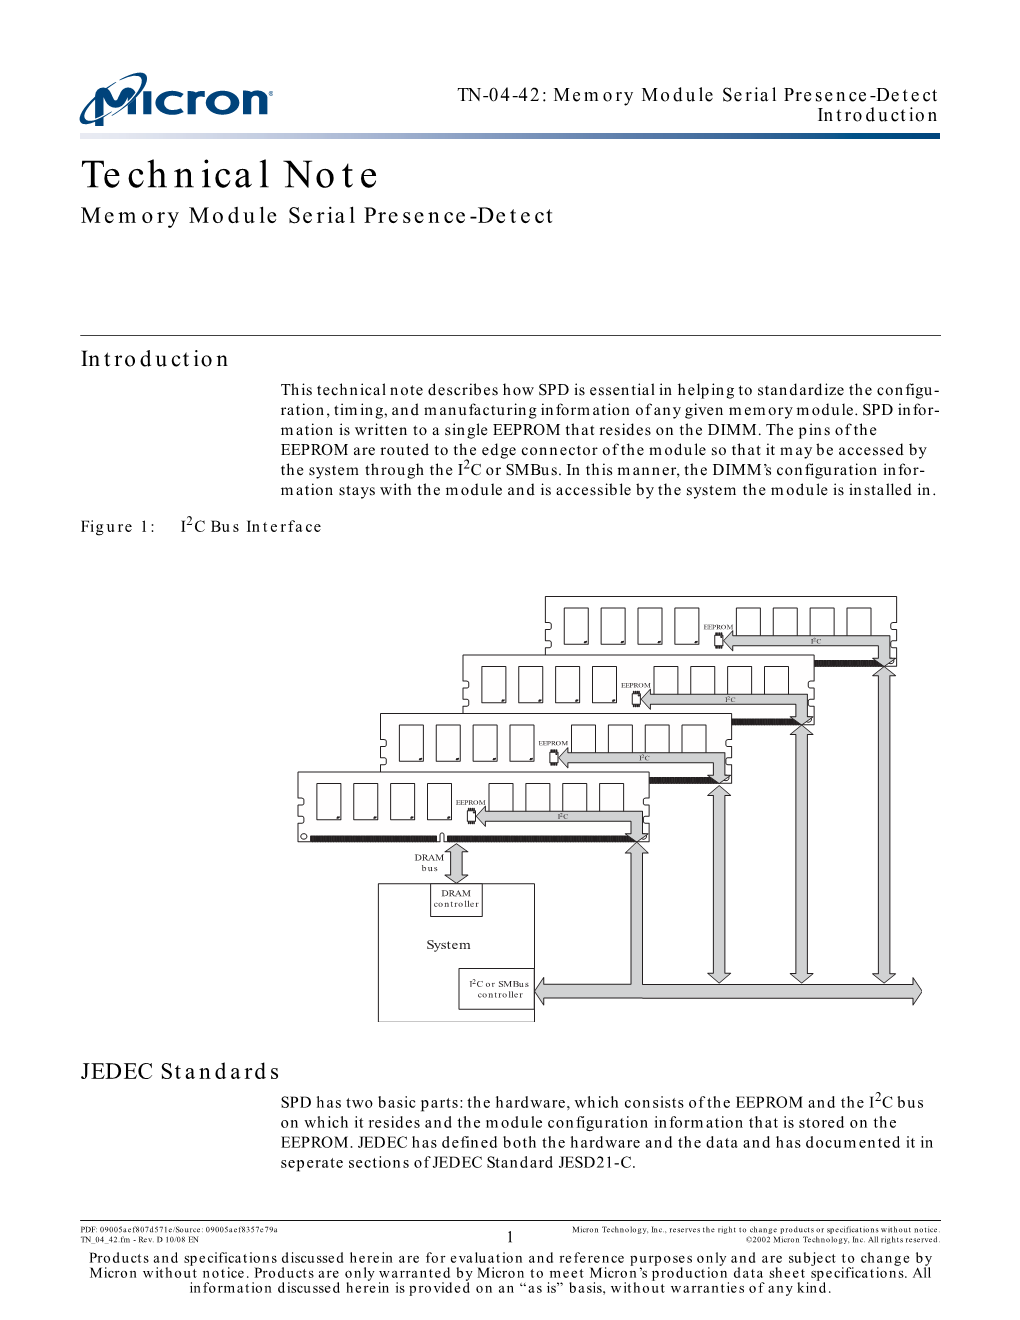 TN-04-42: Memory Module Serial Presence-Detect Introduction Technical Note Memory Module Serial Presence-Detect